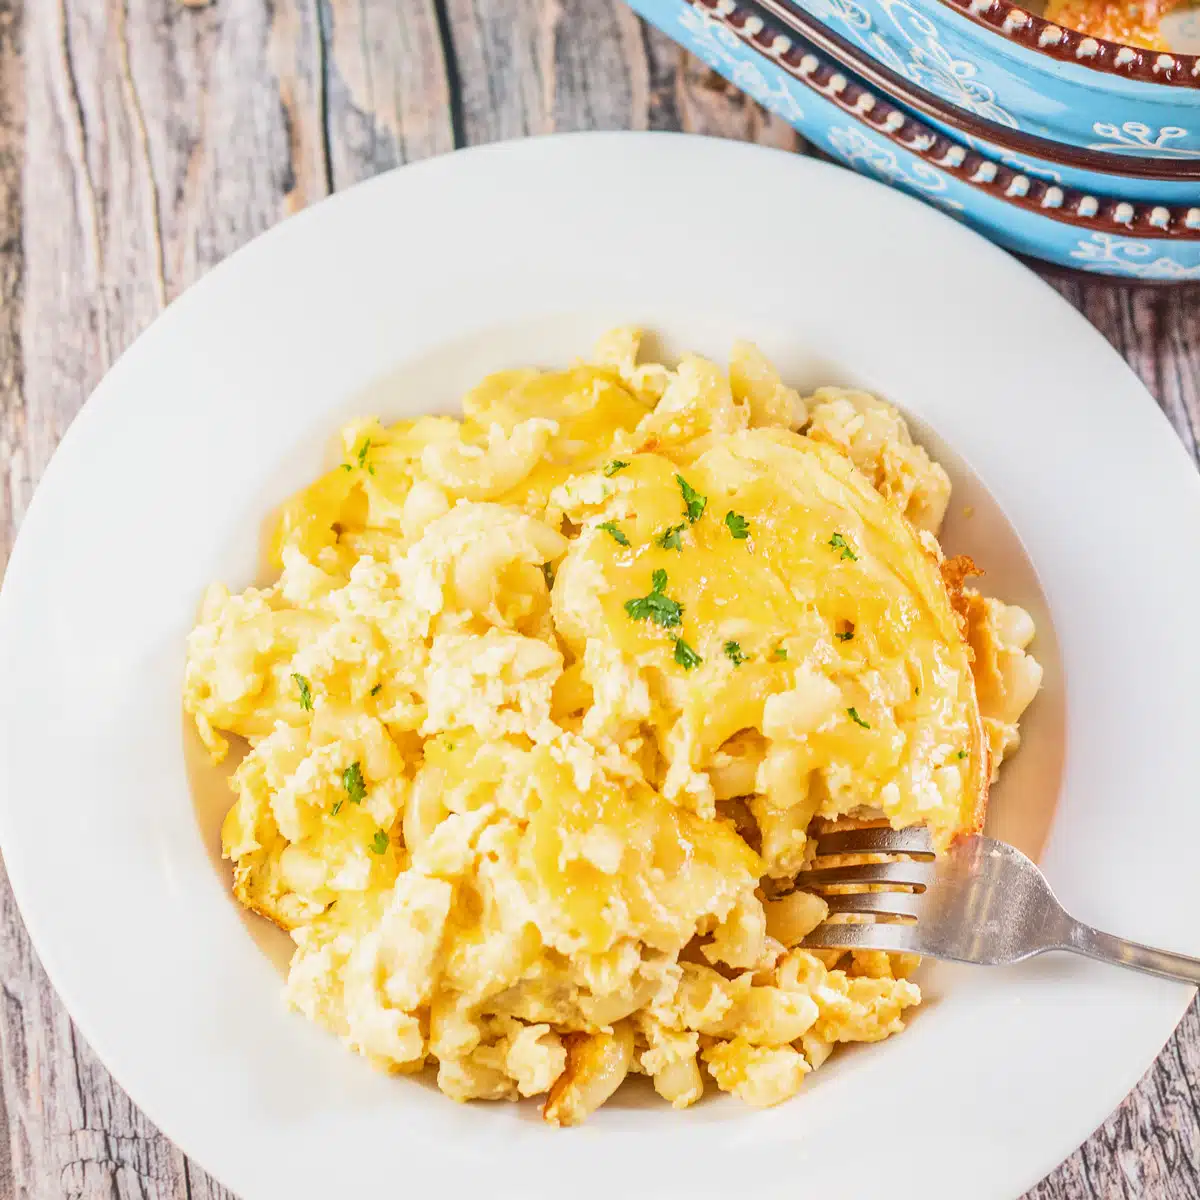 치즈, 계란, 사워 크림을 듬뿍 넣고 완벽하게 구운 폴라딘의 최고의 마카로니 앤 치즈 레시피.